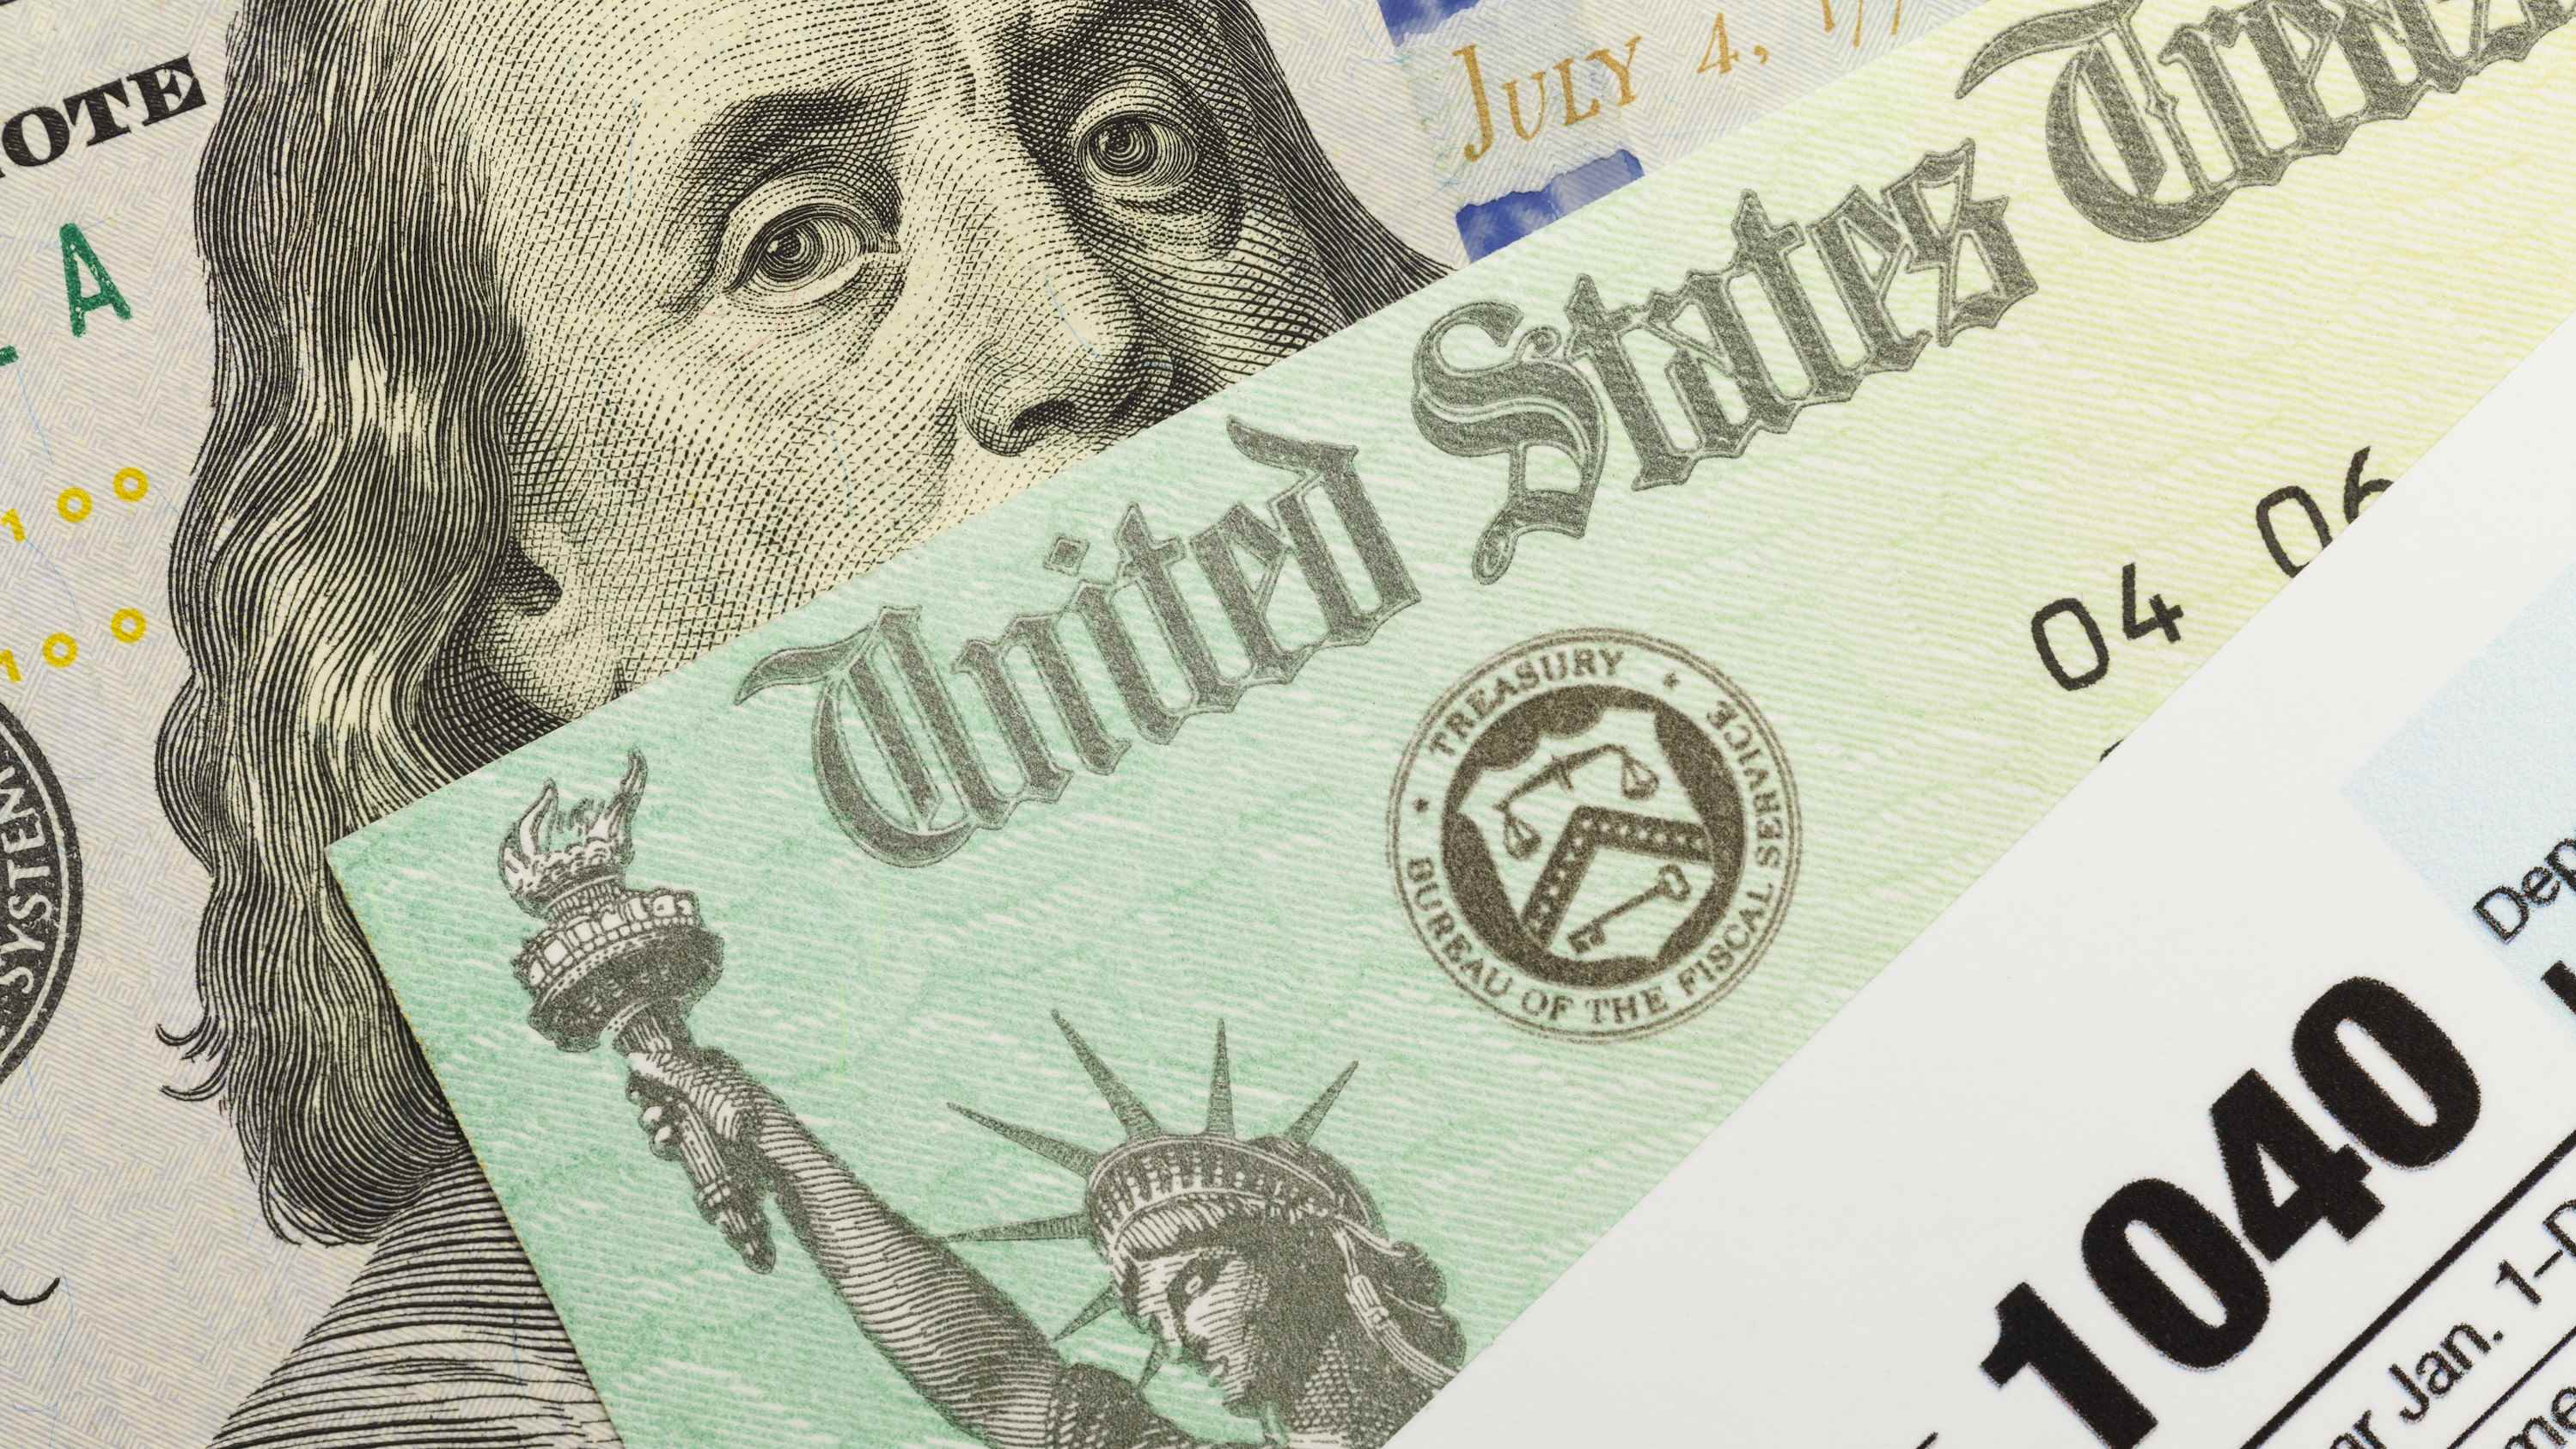 1040 formunu, ABD hazinesinden bir çeki ve yüz dolarlık banknotu gösteren bir resim